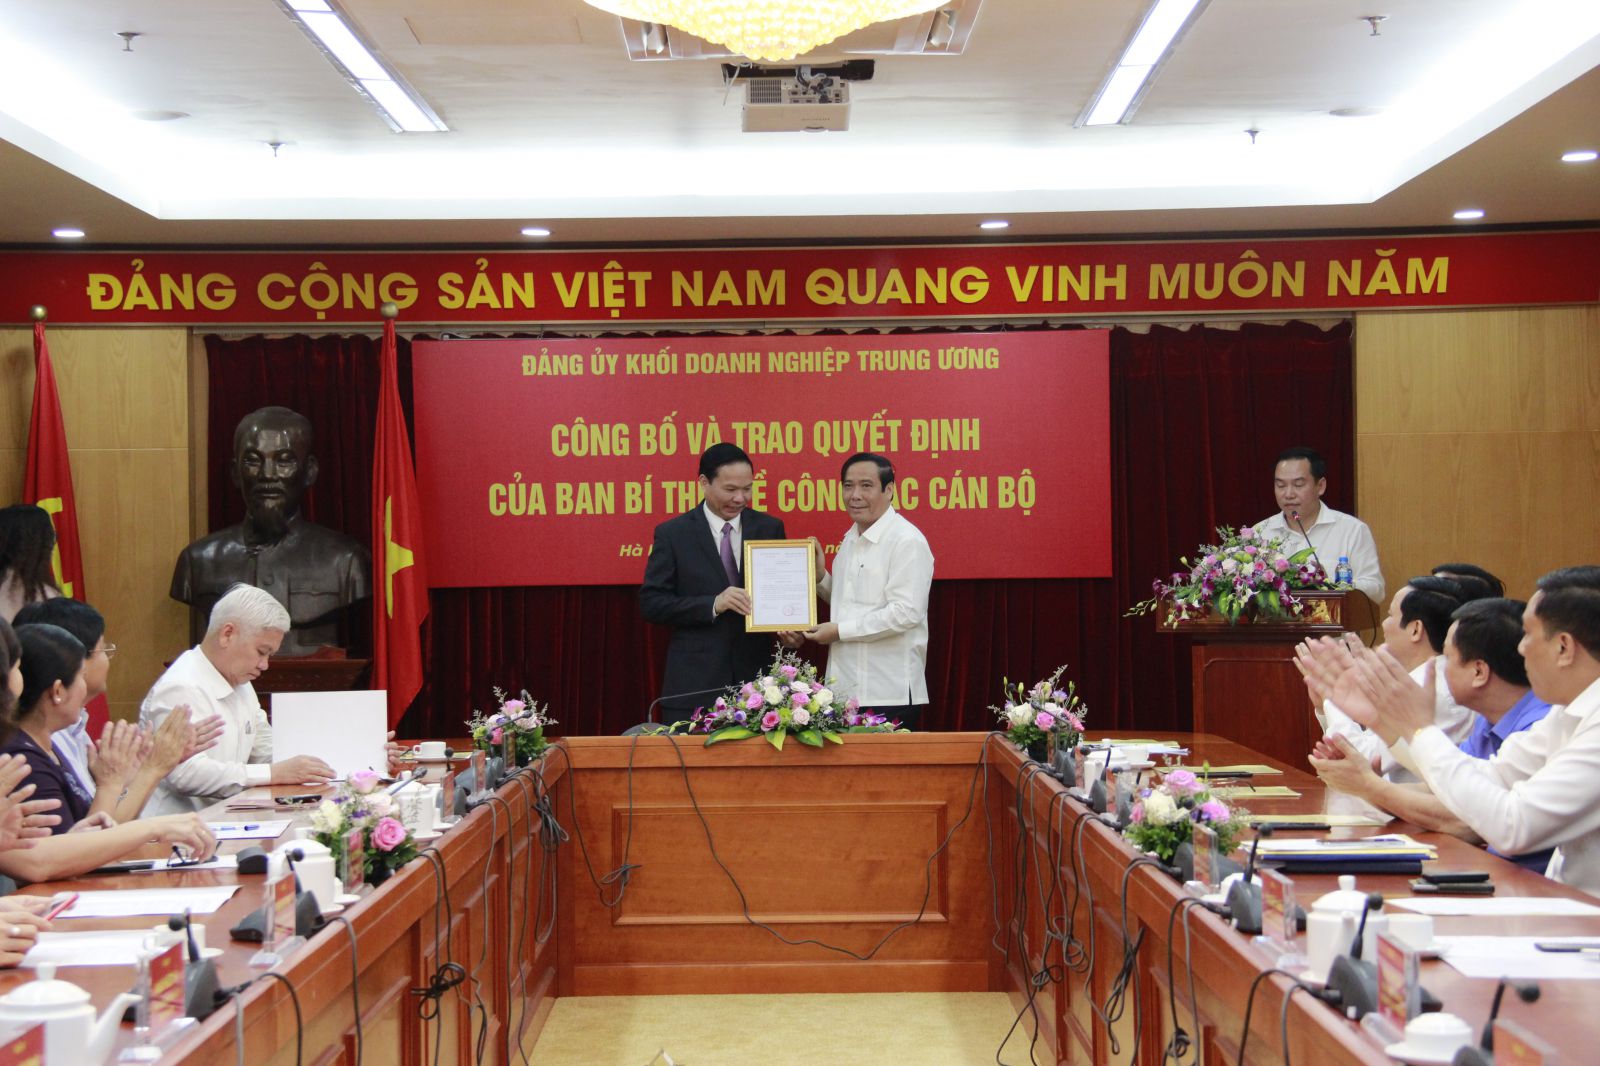 Ông Nguyễn Thanh Bình, Ủy viên Trung ương Đảng, Phó Trưởng ban Thường trực Ban Tổ chức Trung ương đã trao quyết định và chúc mừng ông Lê Văn Châu.